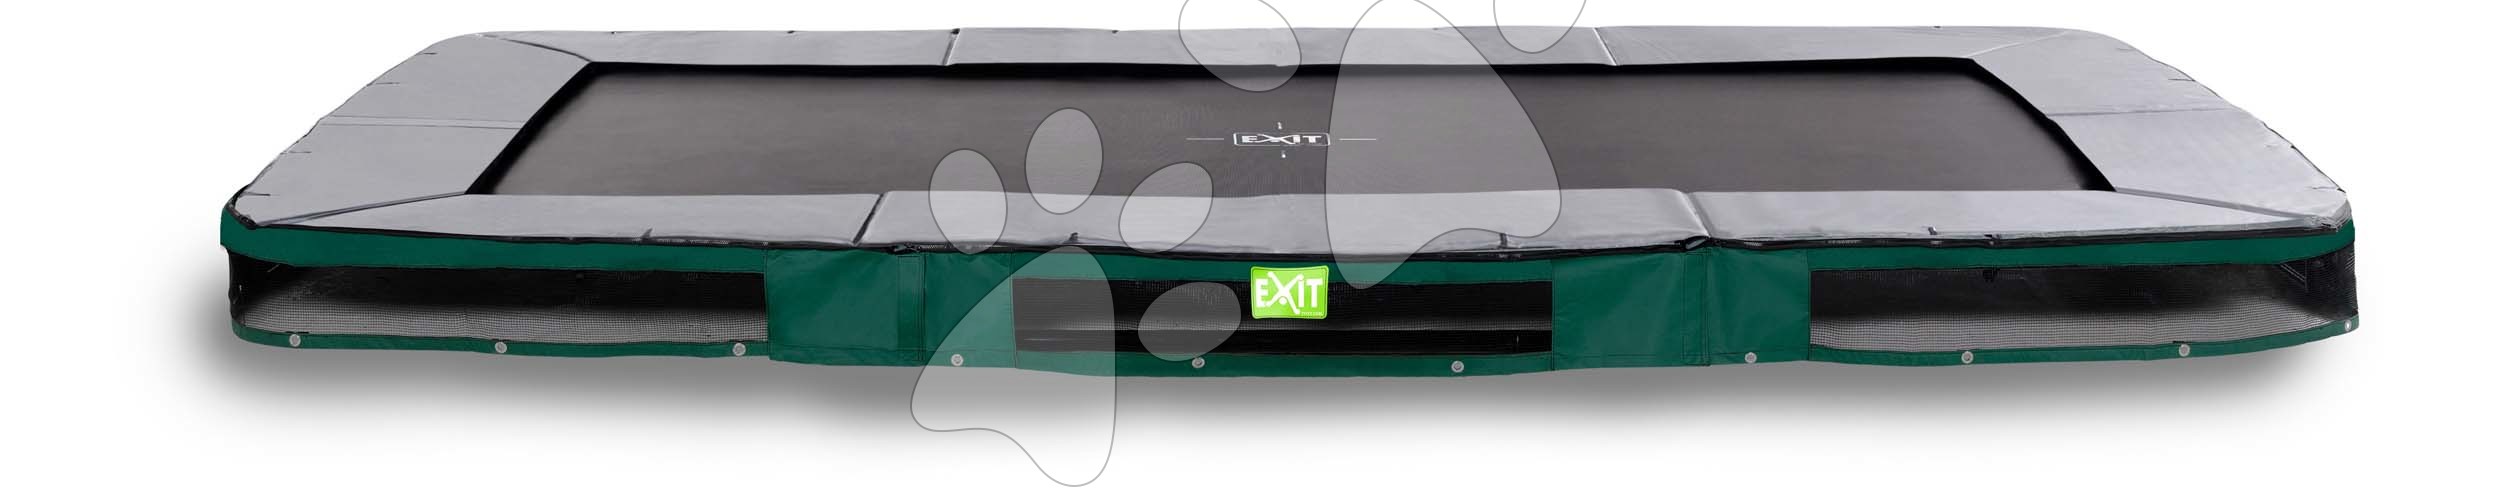 Trampolína Elegant Premium Ground Sports Green Exit Toys přízemní 214*366 cm zelená